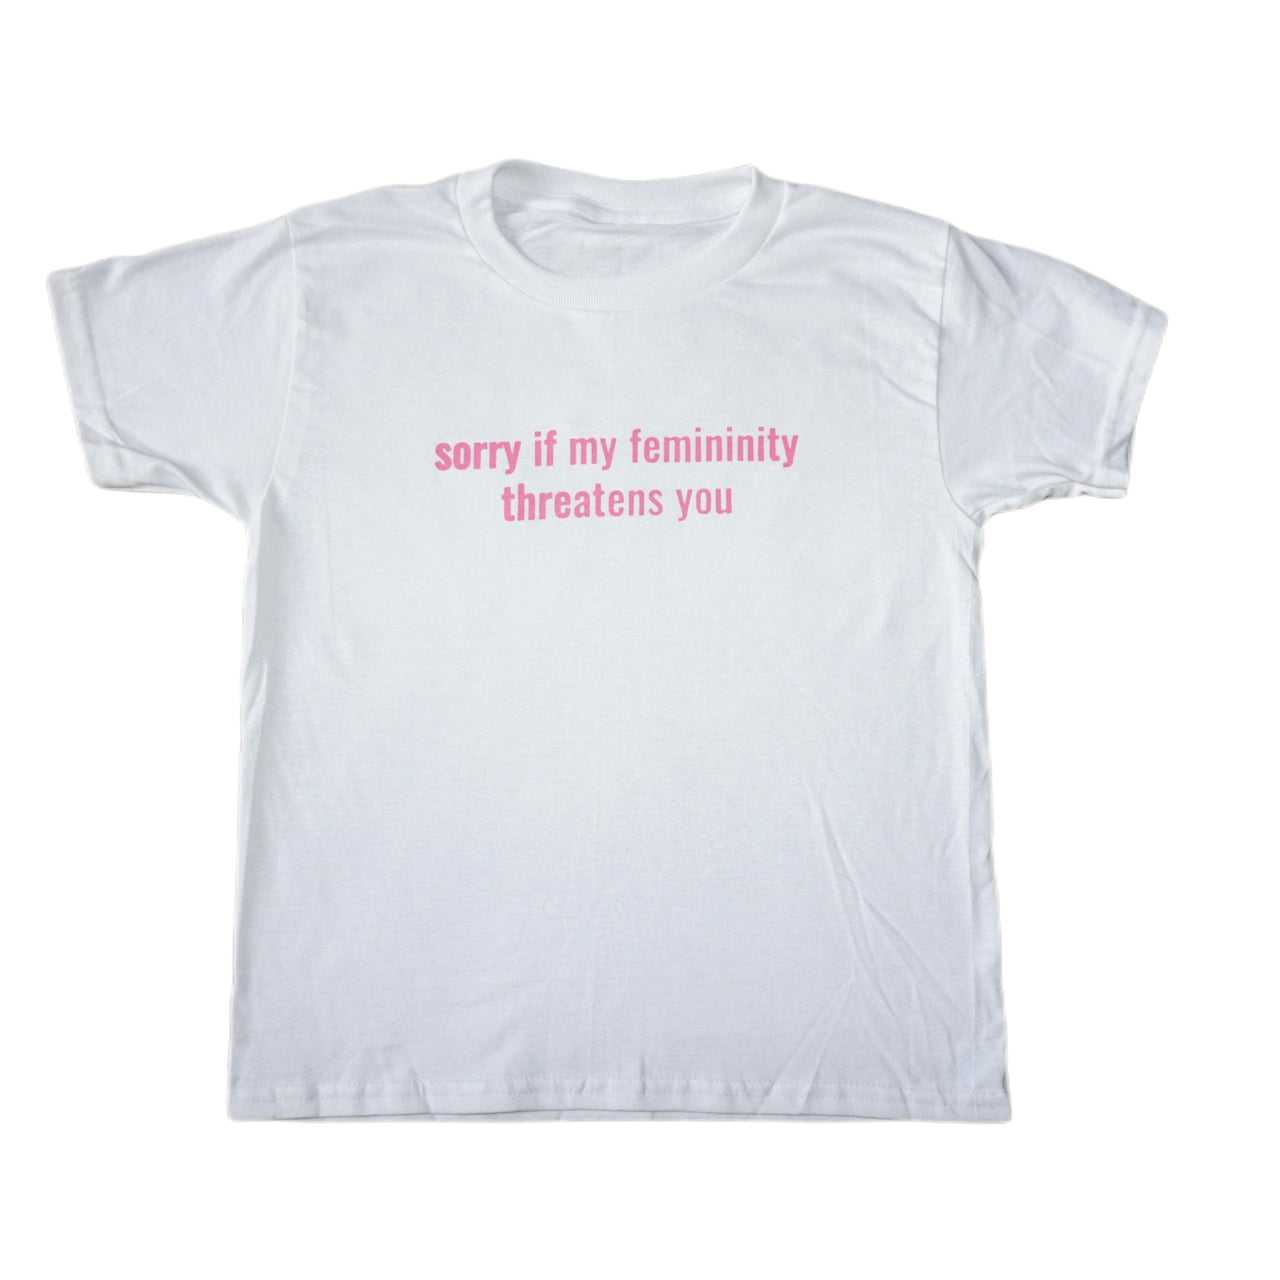 Sorry if my femininity threatens you tee